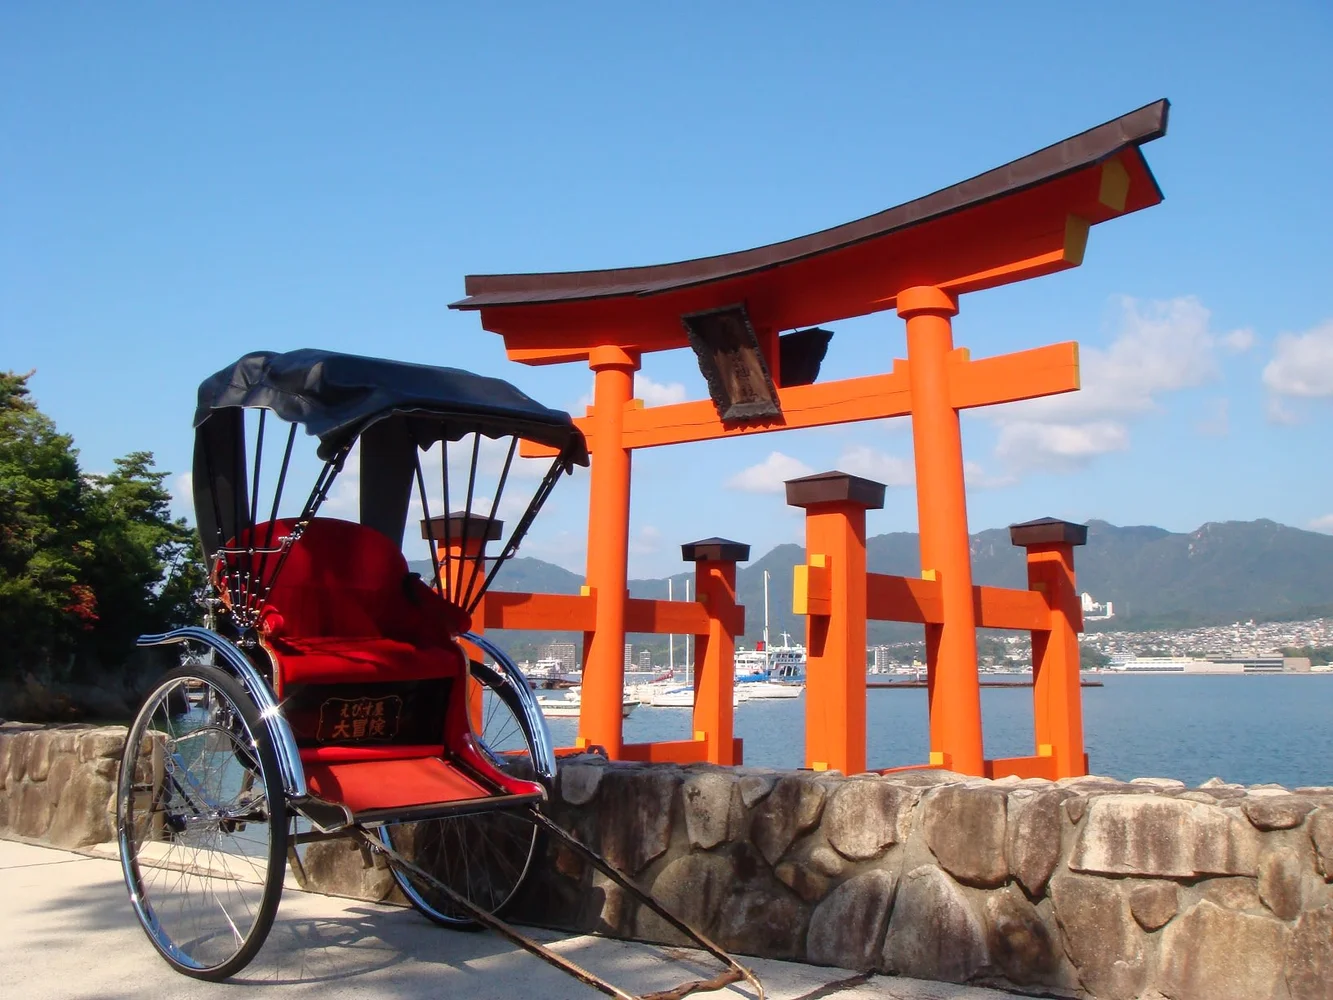 広島 人力車のえびす屋 世界遺産の島「宮島」を巡るツアー予約